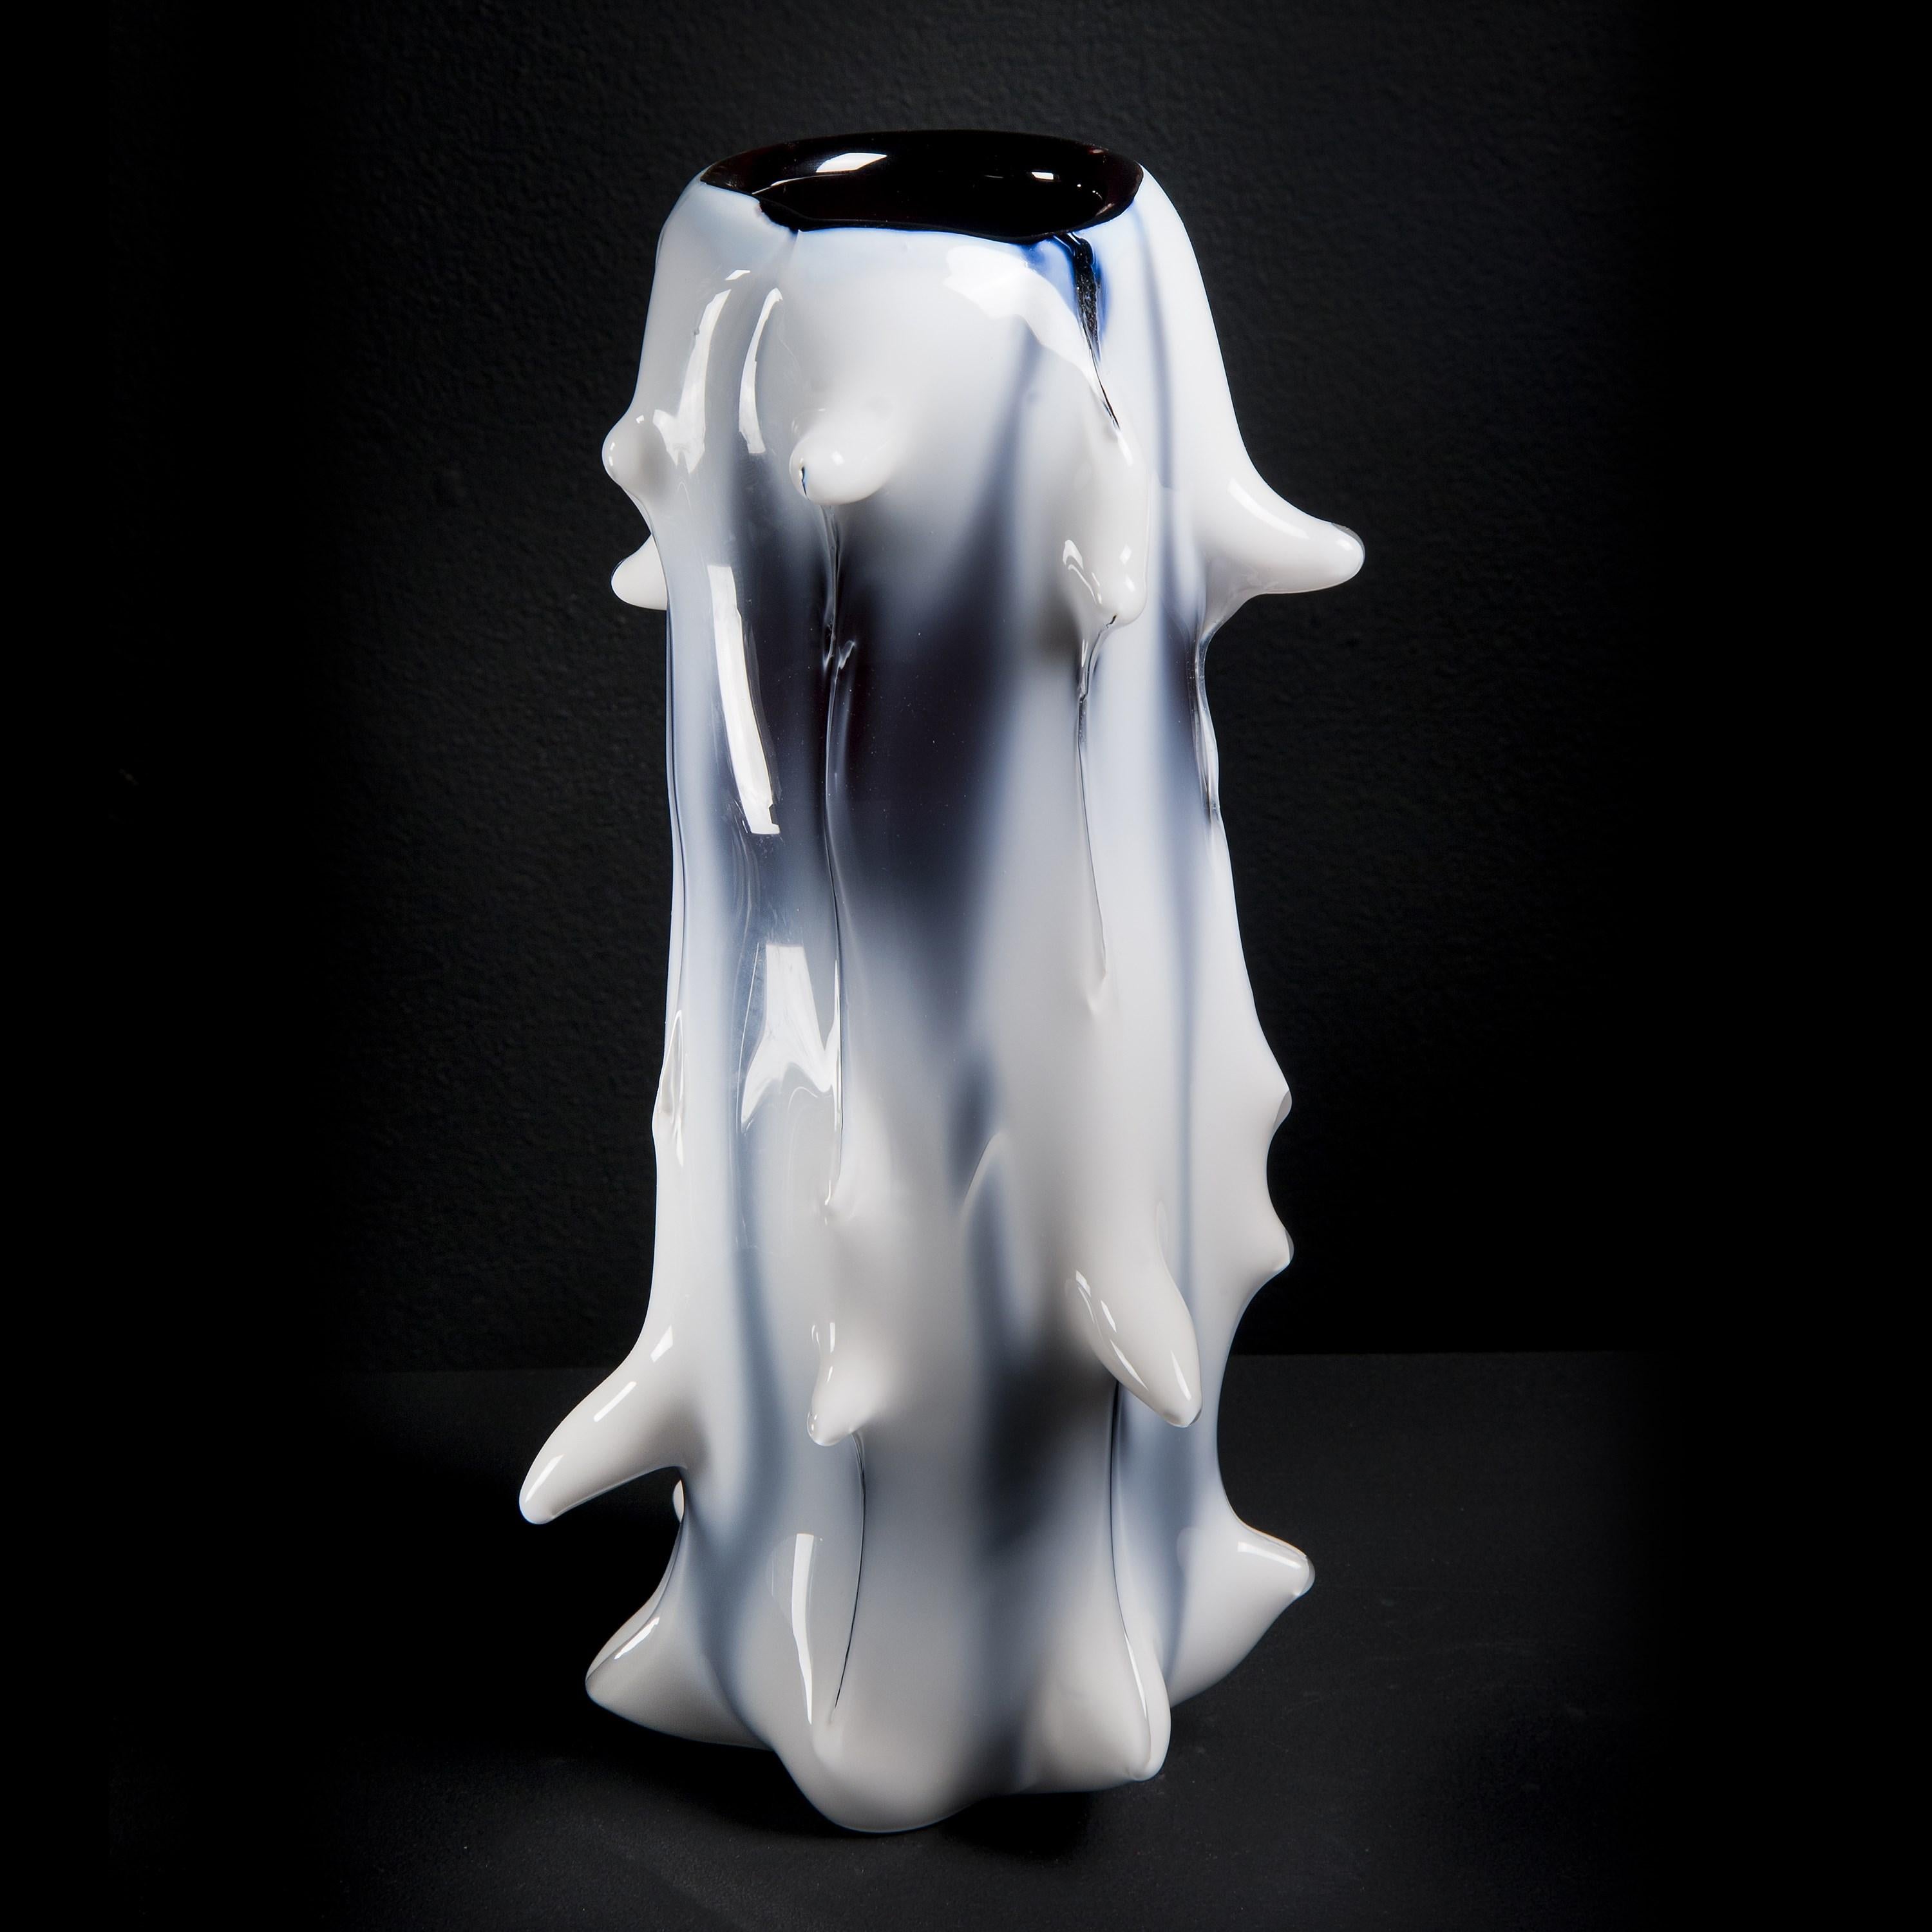 Spinal II est un vase en verre blanc et aubergine inspiré d'un arbre, réalisé en édition limitée (49 exemplaires) par l'artiste suédois Mårten Medbo.

Parmi ses œuvres, on trouve de nombreux exemples de pièces qui ressemblent à des structures